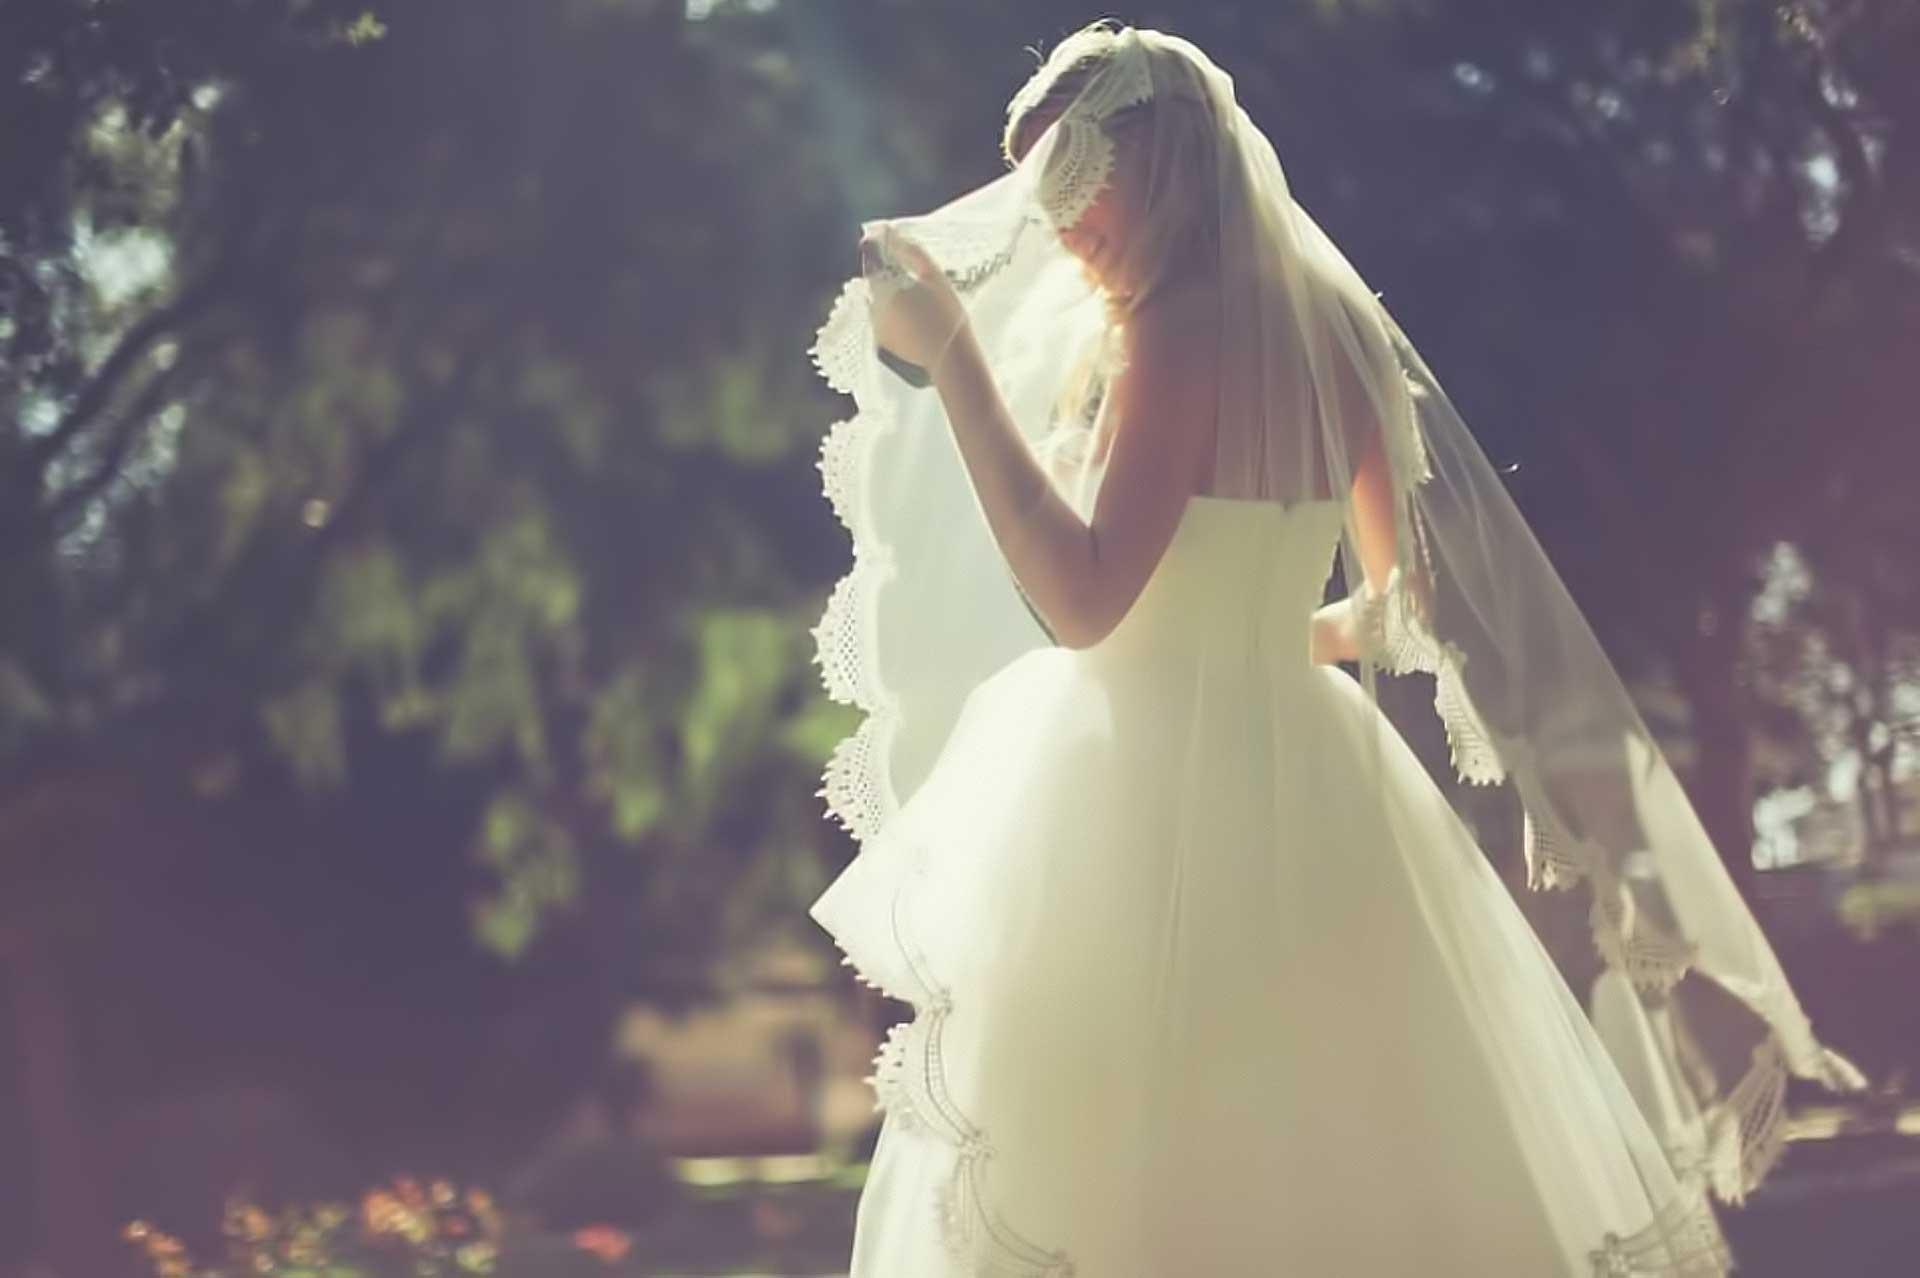 Во сне видеть себя невестой в свадебном